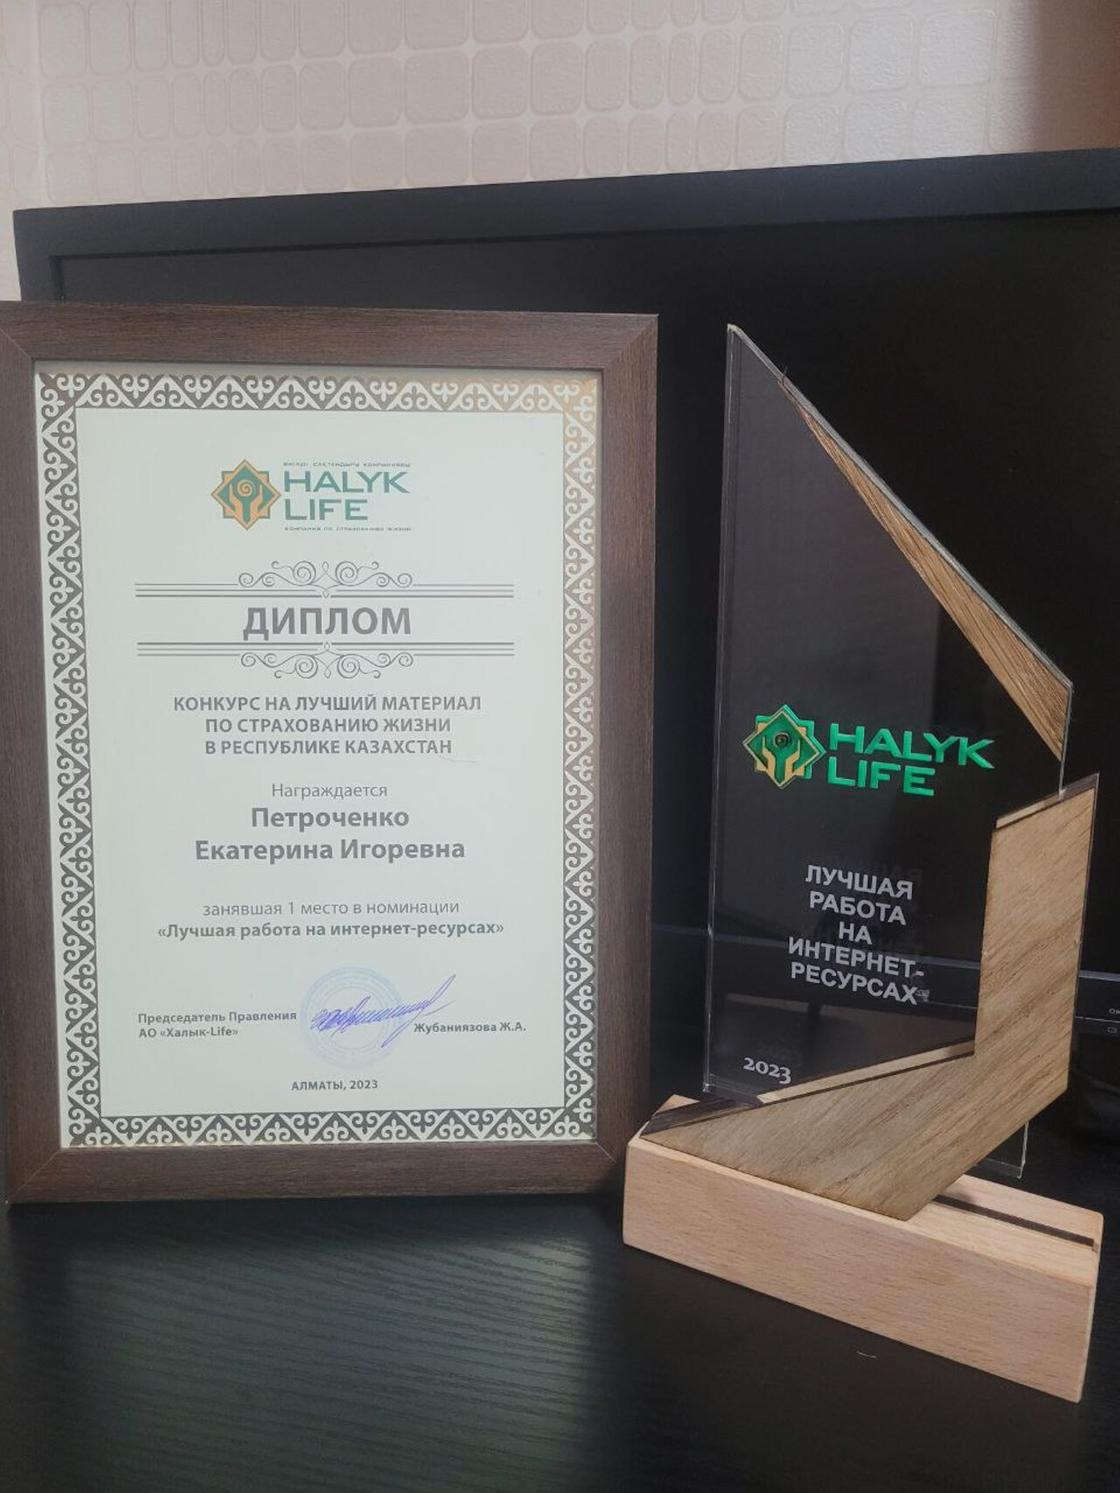 Диплом и статуэтка Екатерины Петроченко (Сохаревой) за первое место в республиканском конкурсе на лучший материал по страхованию жизни в РК от компании Halyk Life в номинации “Лучшая работа на интернет-ресурсах“